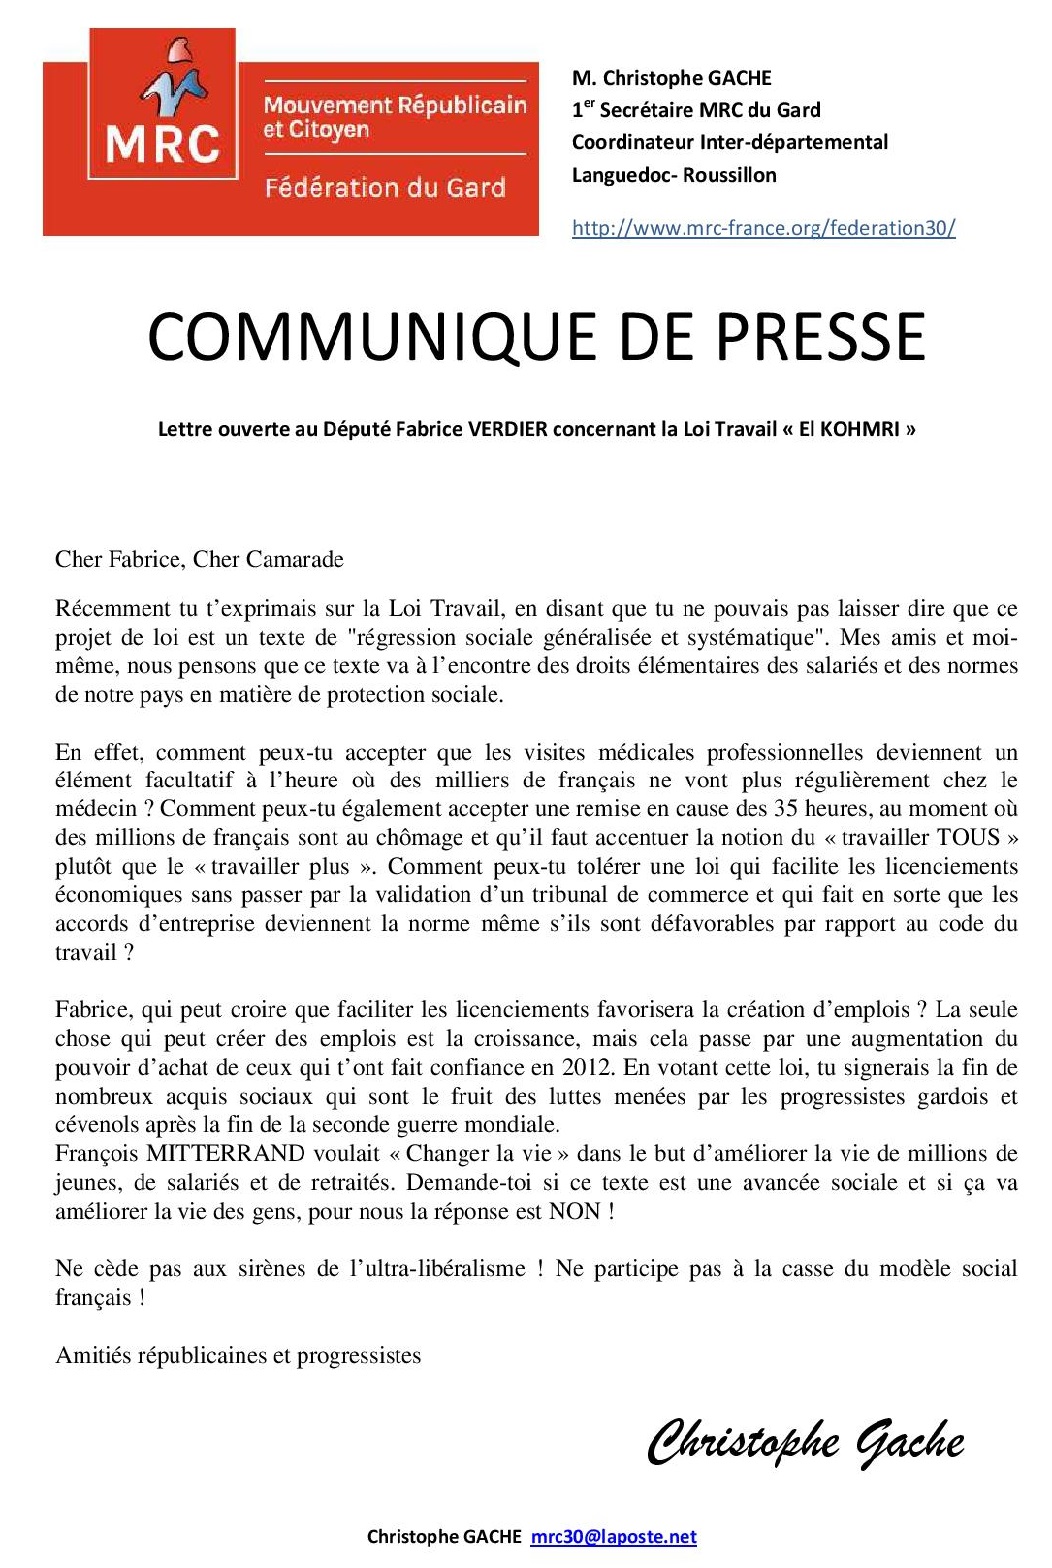 Lettre ouverte à notre camarade le Député Fabrice VERDIER, NON à la loi Travail "El KOHMRI"